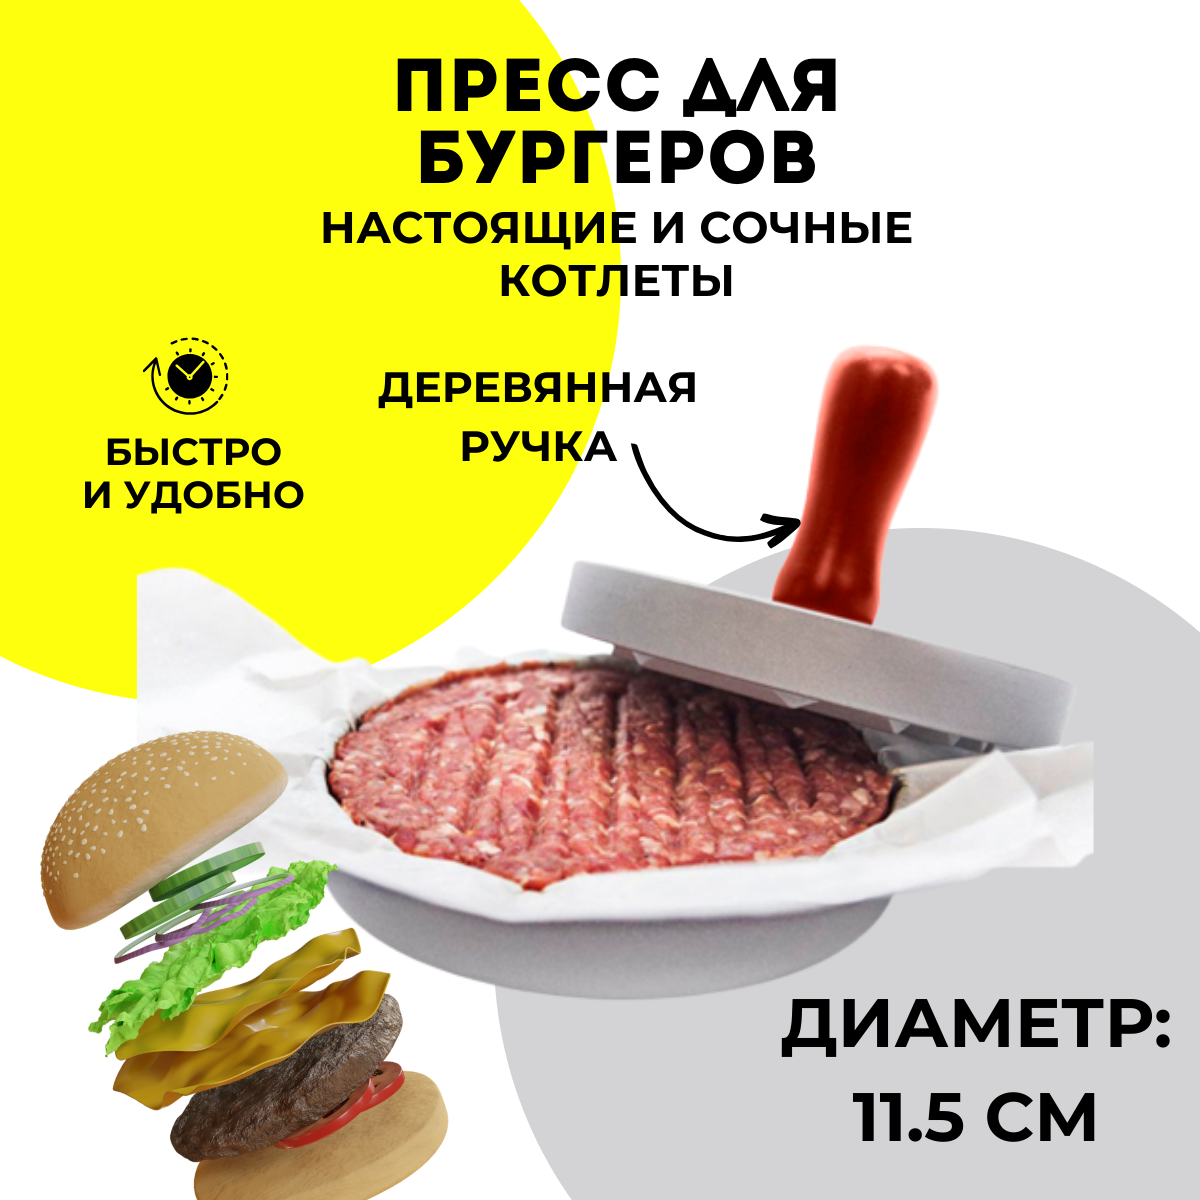 Пресс-форма URM THOT128039 для бургеров и котлет - купить в Москве, цены на Мегамаркет | 600013475027